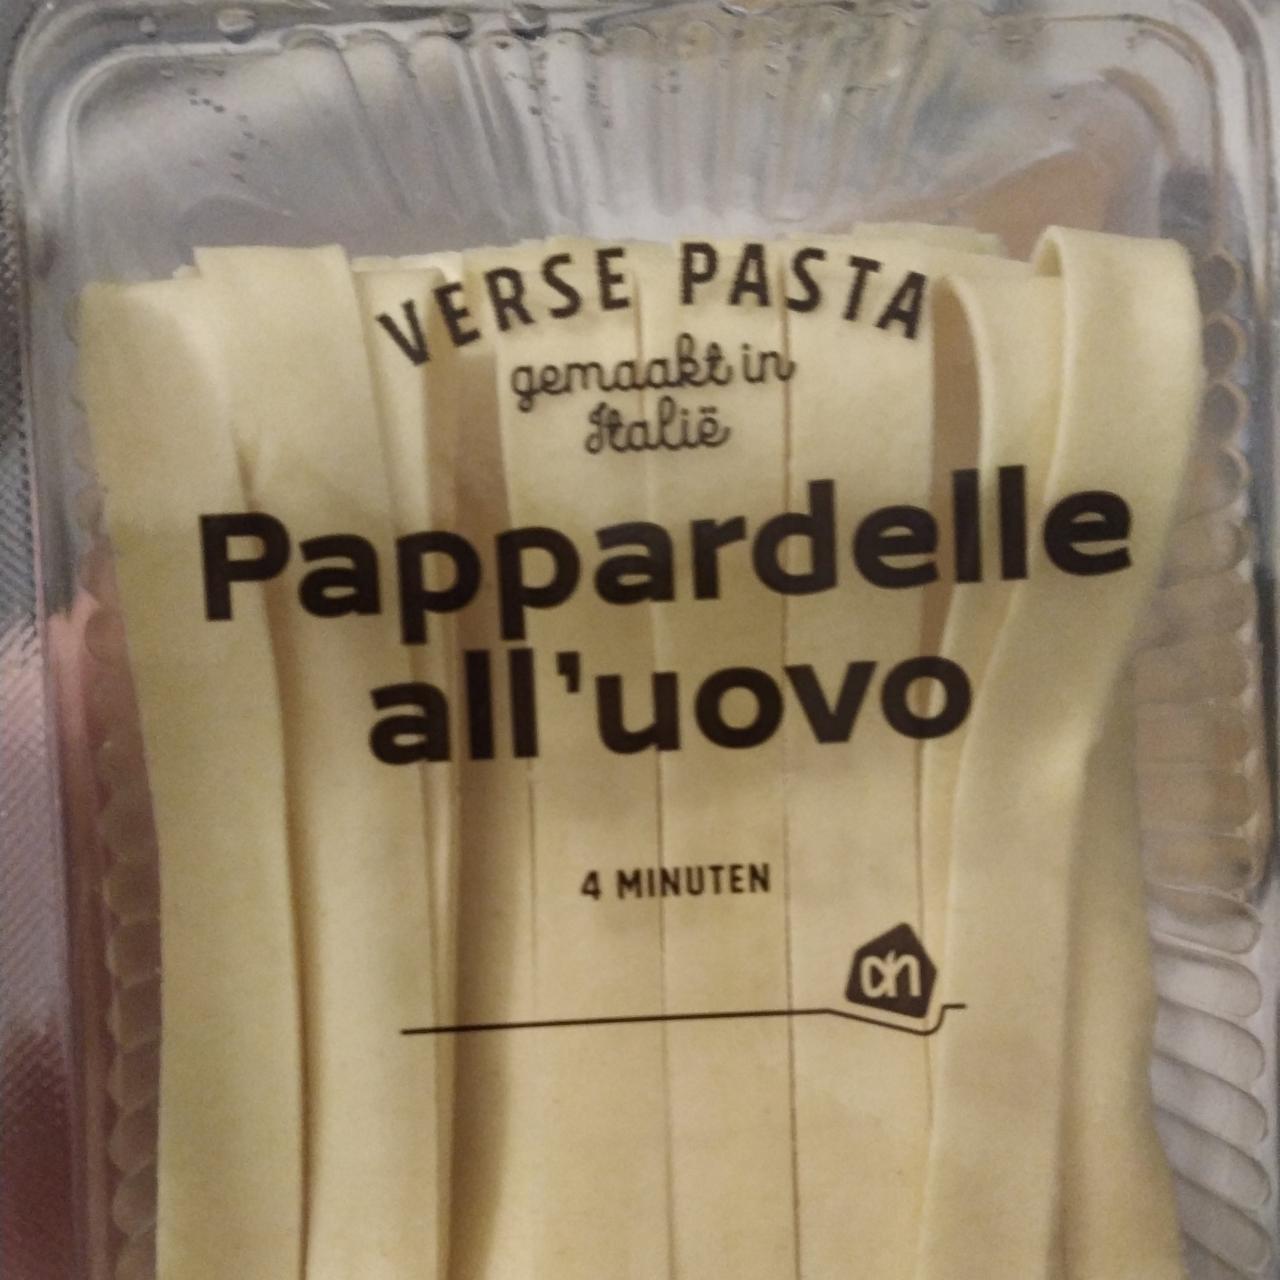 Fotografie - Pappardelle all'uovo Verse pasta Albert Heijn